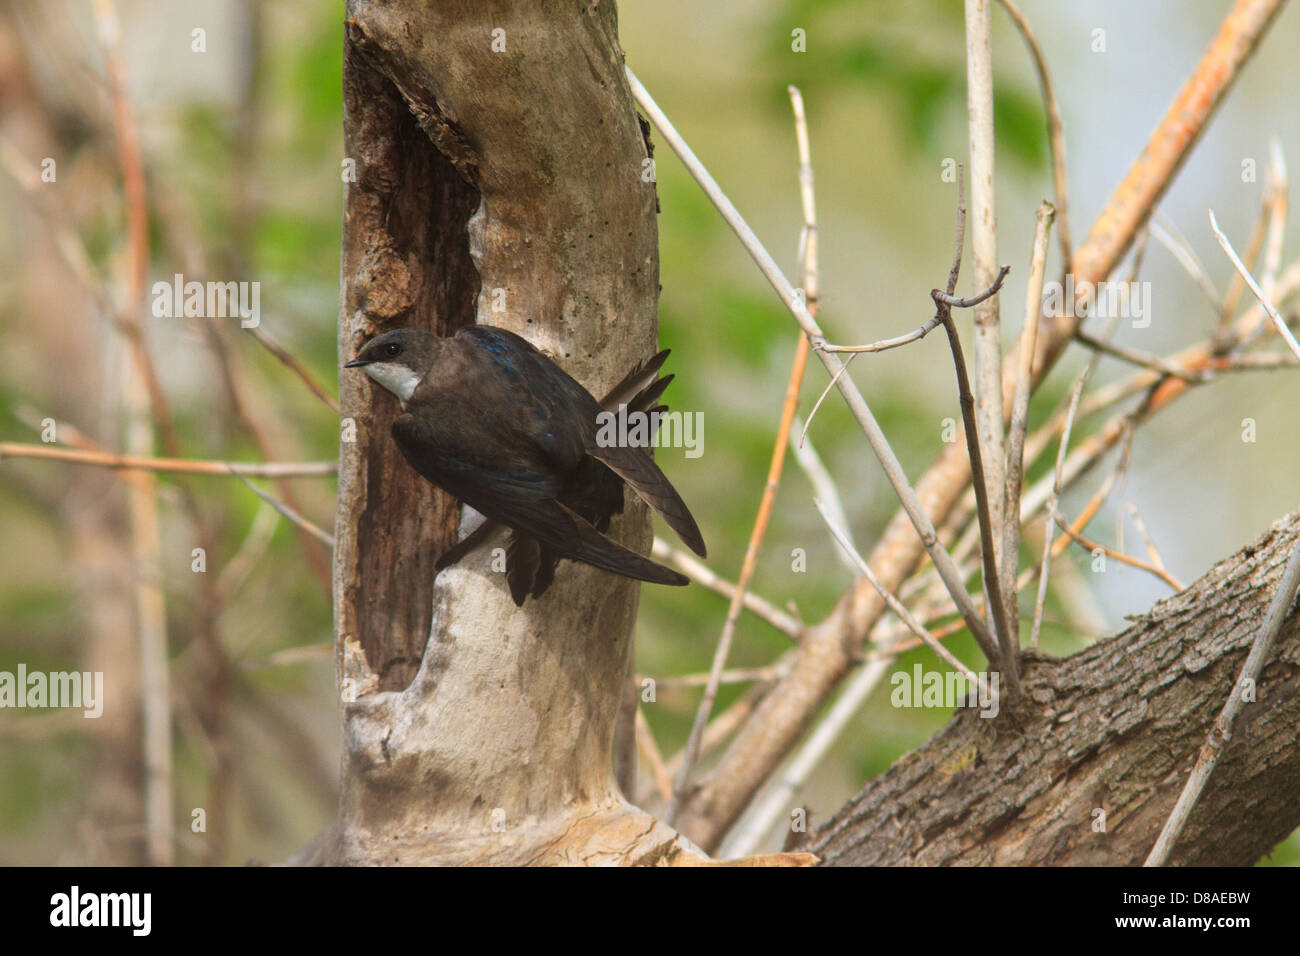 Tree swallow (Tachycineta bicolor) at nesting cavity. Stock Photo